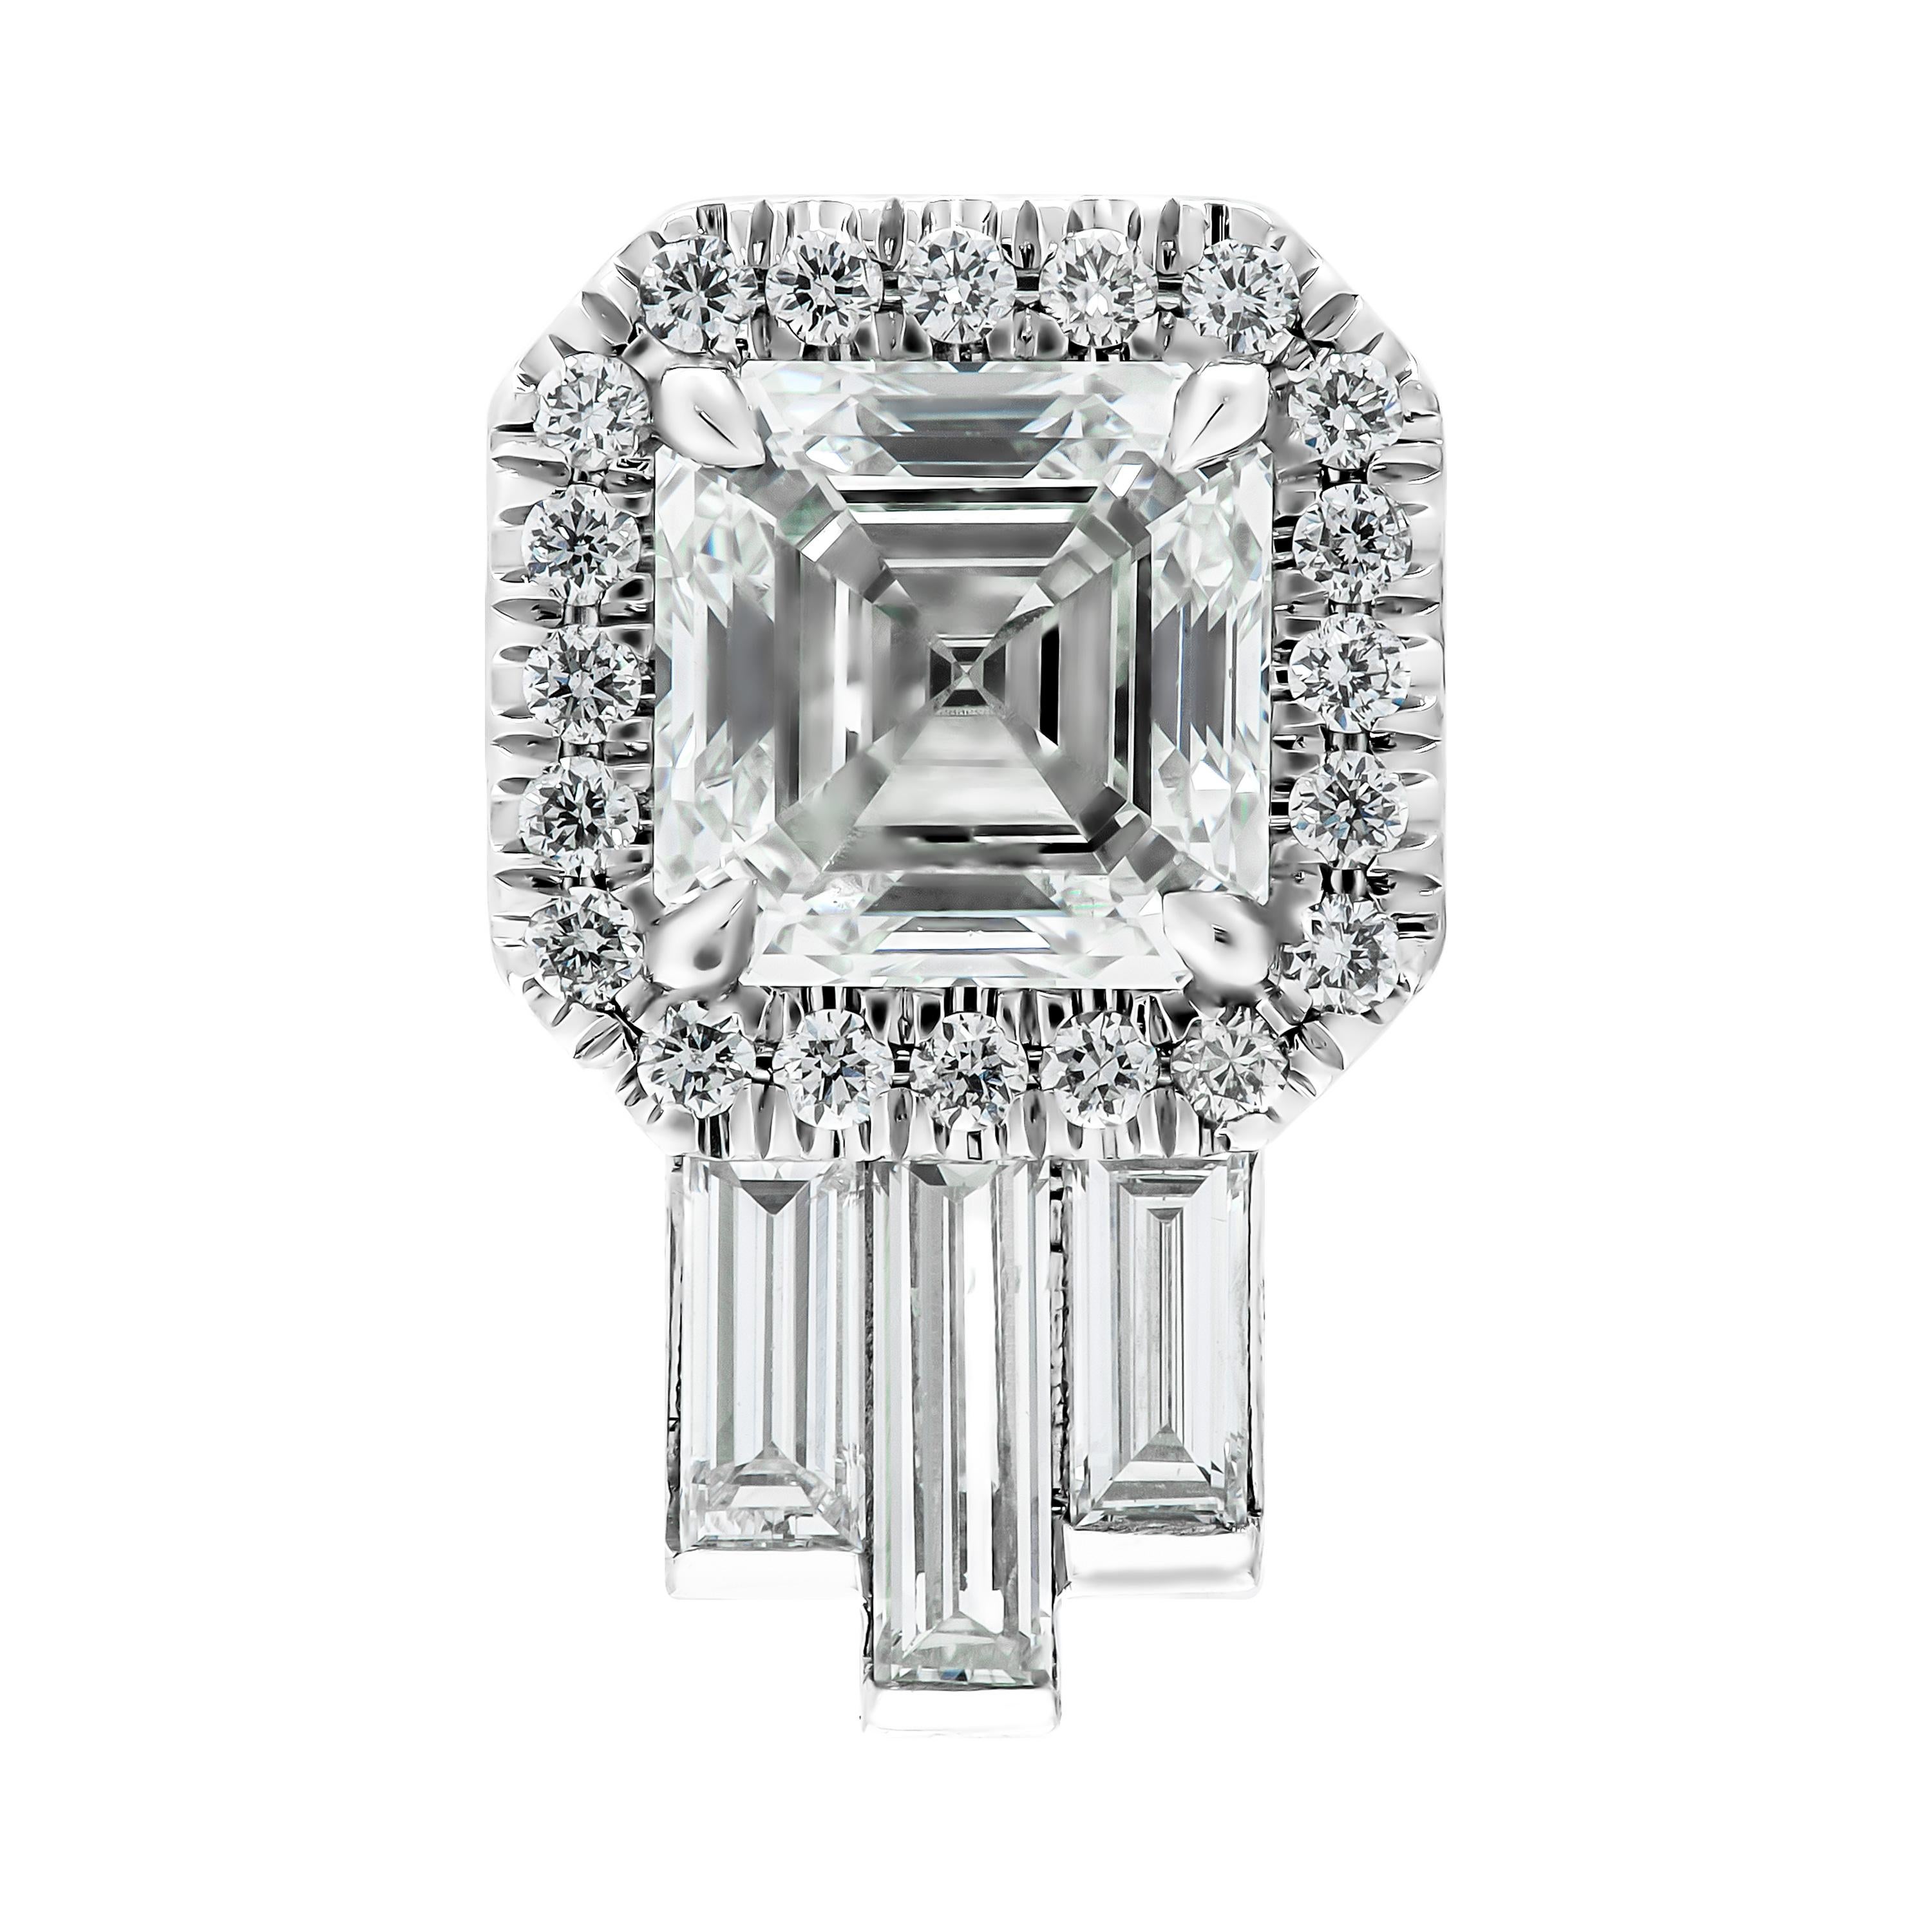 Diamantohrringe mit GIA-zertifizierten Diamanten im Asscher-Schliff mit einem Gewicht von 0,90 ct pro Stein: 
                              I VVS1 GIA#5201829685;
                             H VVS2 GIA#5201852390 
Montiert in Platin 950, mit Halo